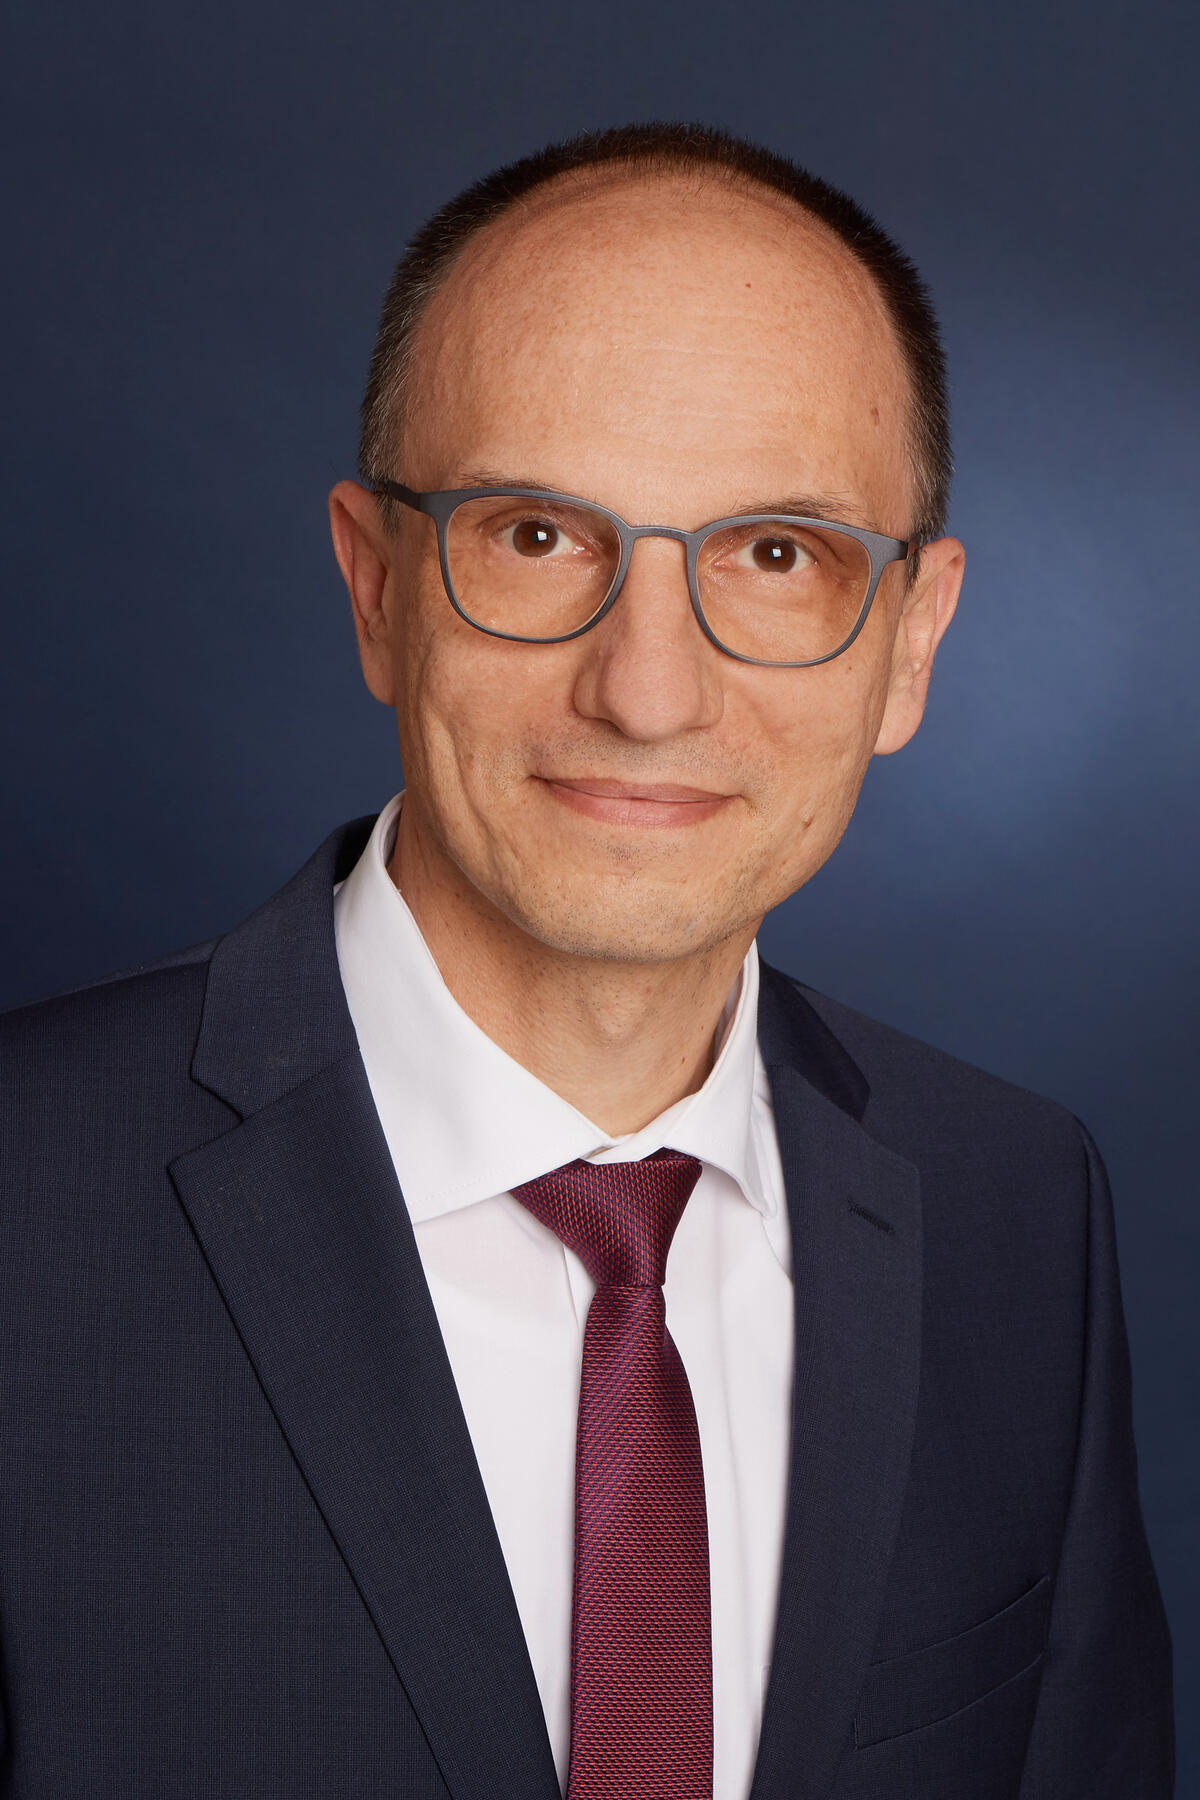 Dr. Stefan Goller - Referat für Wirtschaft, Beteiligungen und Digitalisierung (Foto: Jürgen Schraudner)